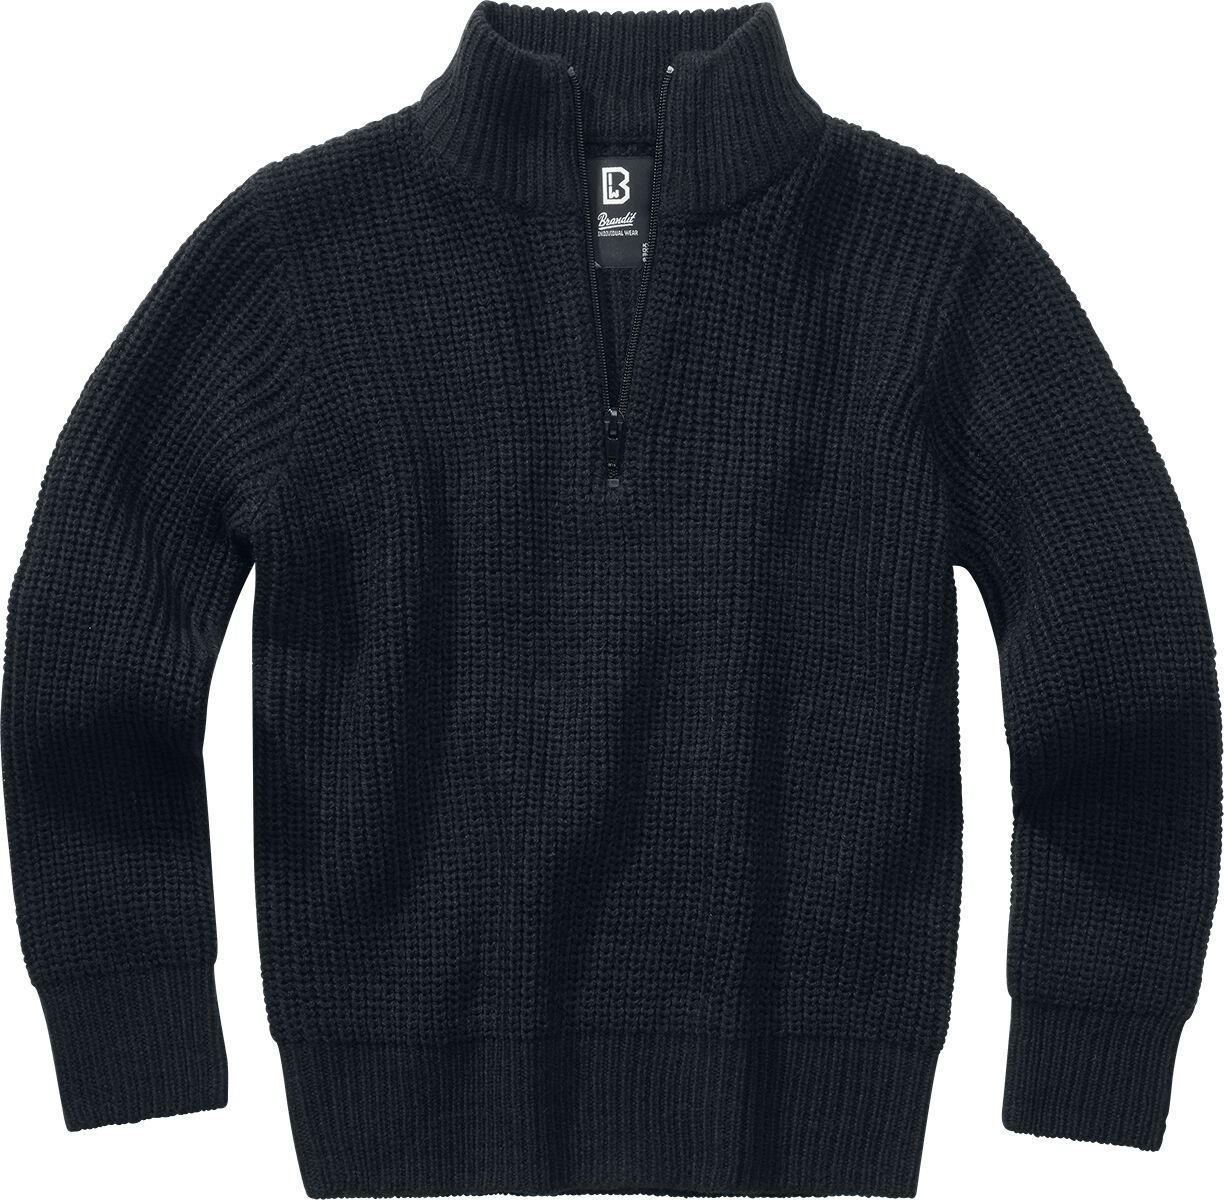 Brandit Kids Marine Troyer Sweatshirt schwarz in 158/164